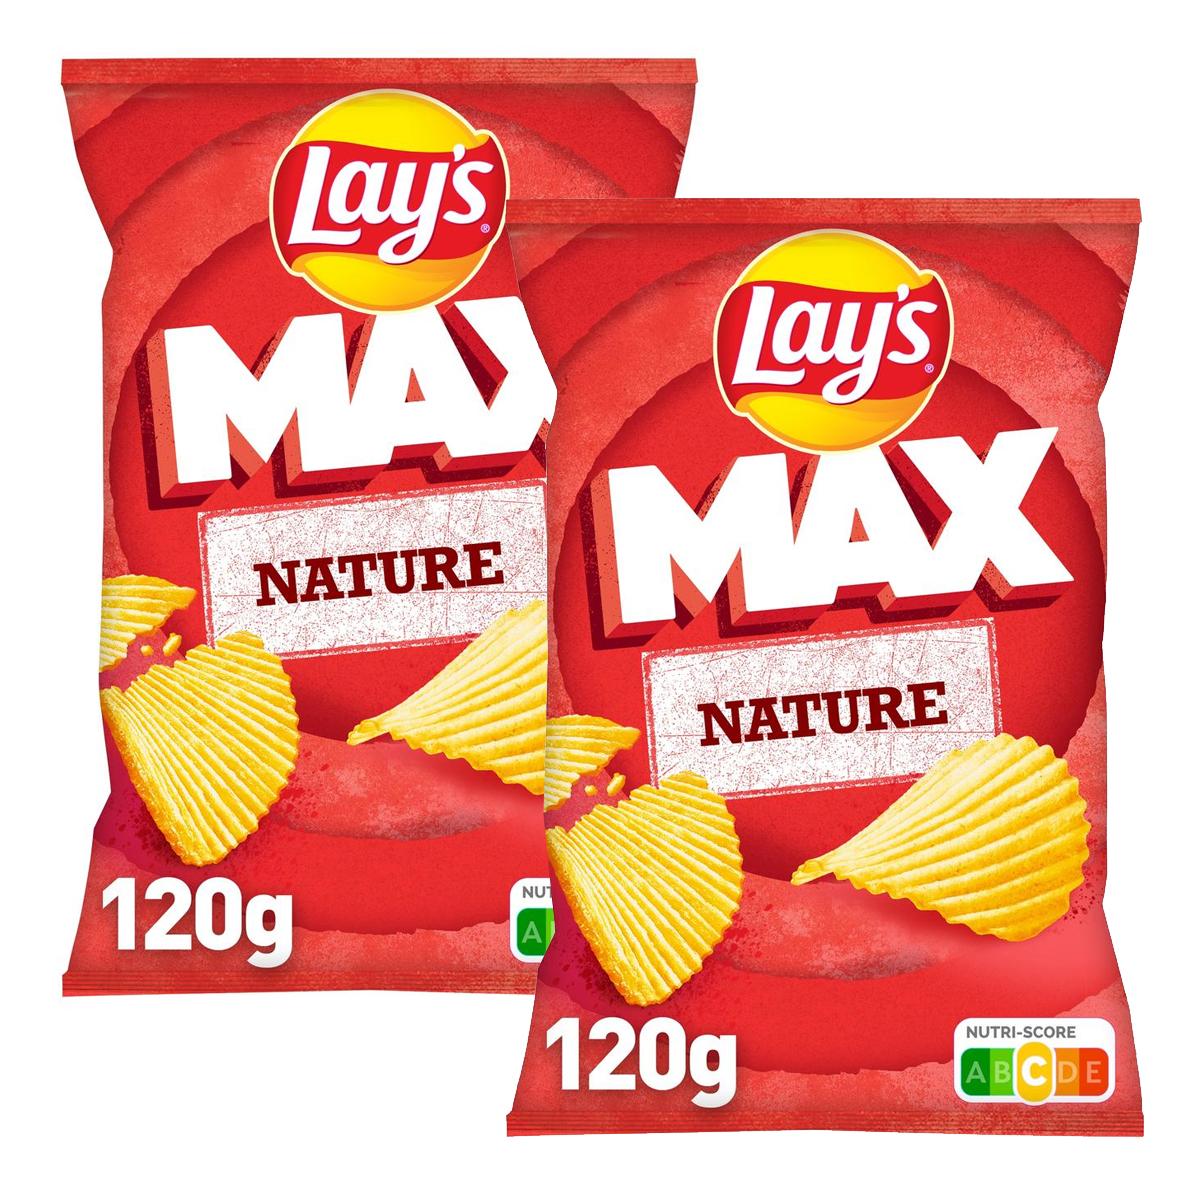 Achat / Vente Promotion Lays Chips ondulées max natures, Lot de 2x120g